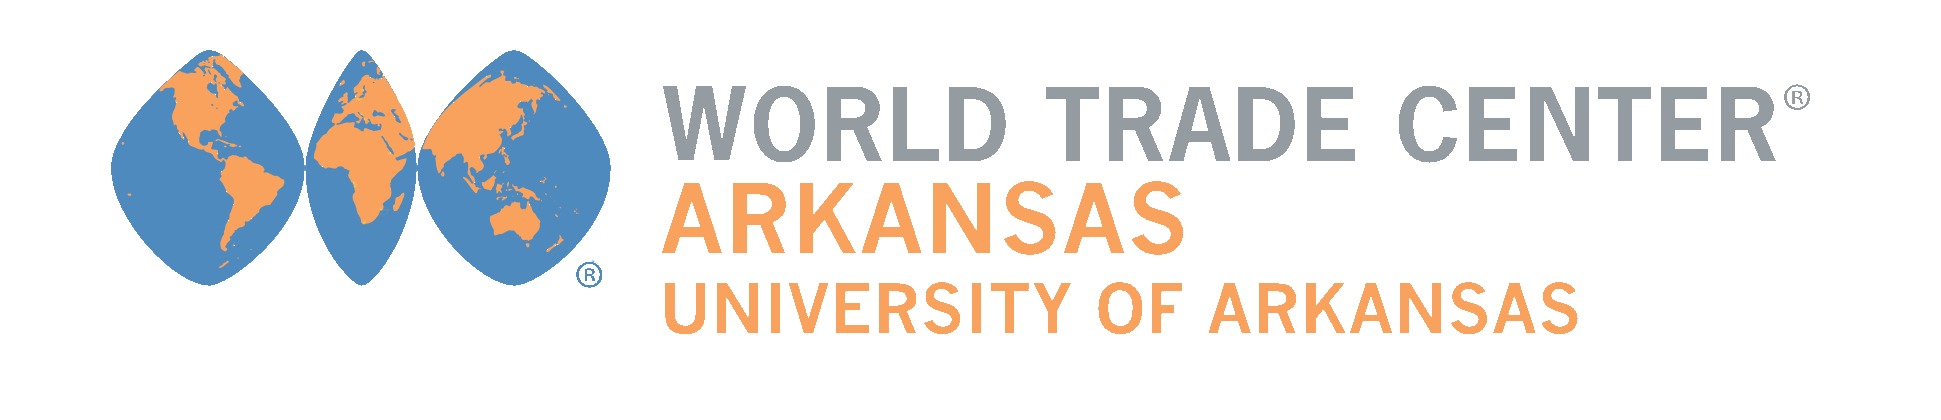 The World Trade Center Arkansas company logo